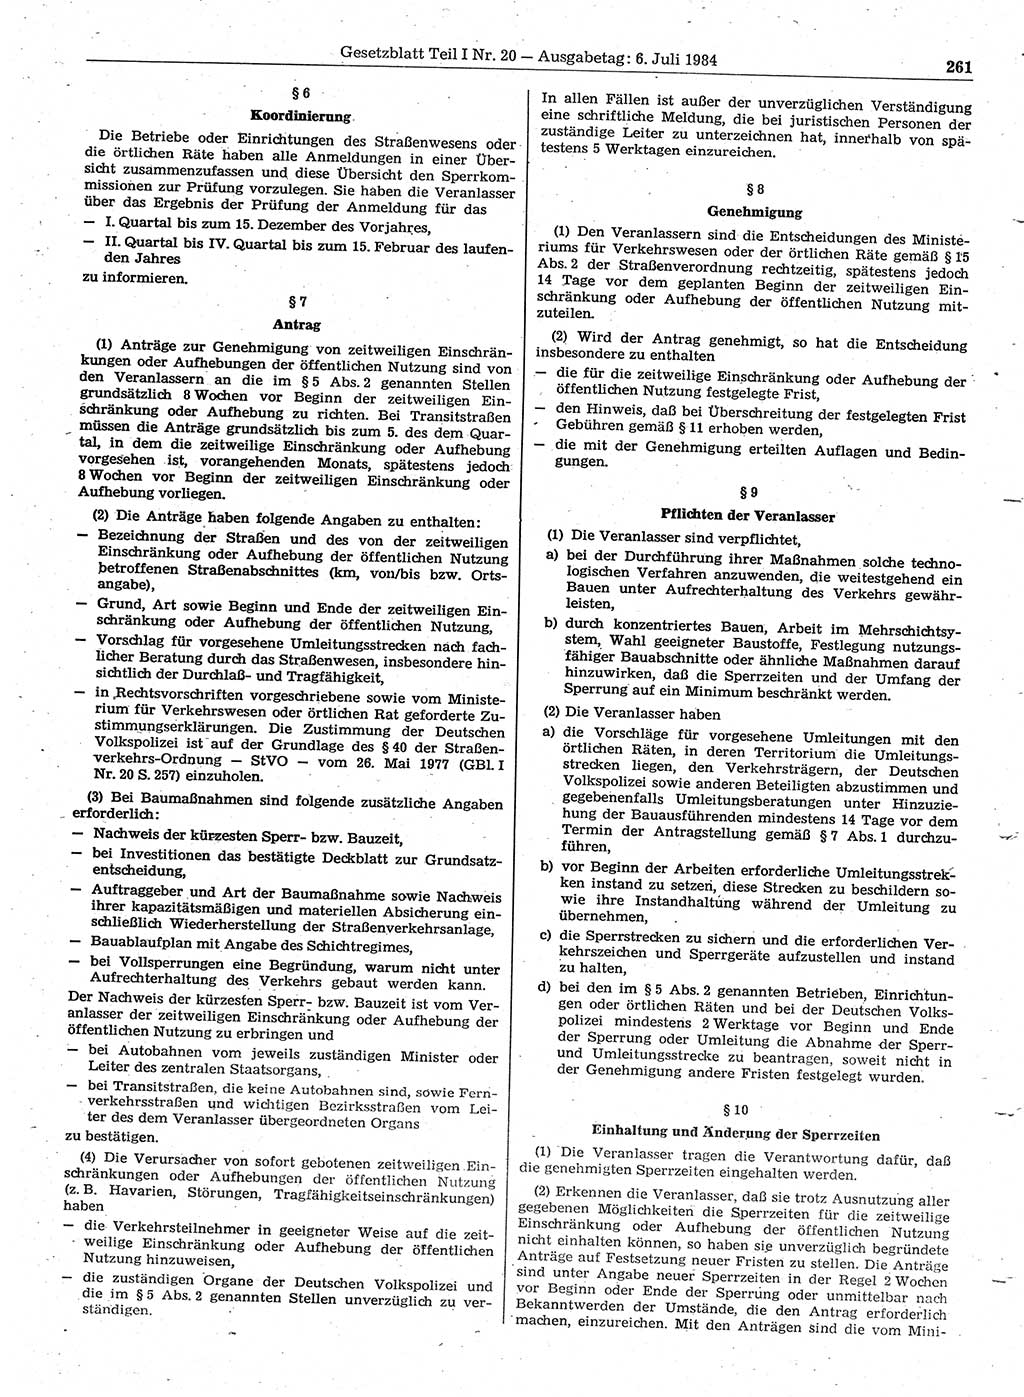 Gesetzblatt (GBl.) der Deutschen Demokratischen Republik (DDR) Teil Ⅰ 1984, Seite 261 (GBl. DDR Ⅰ 1984, S. 261)